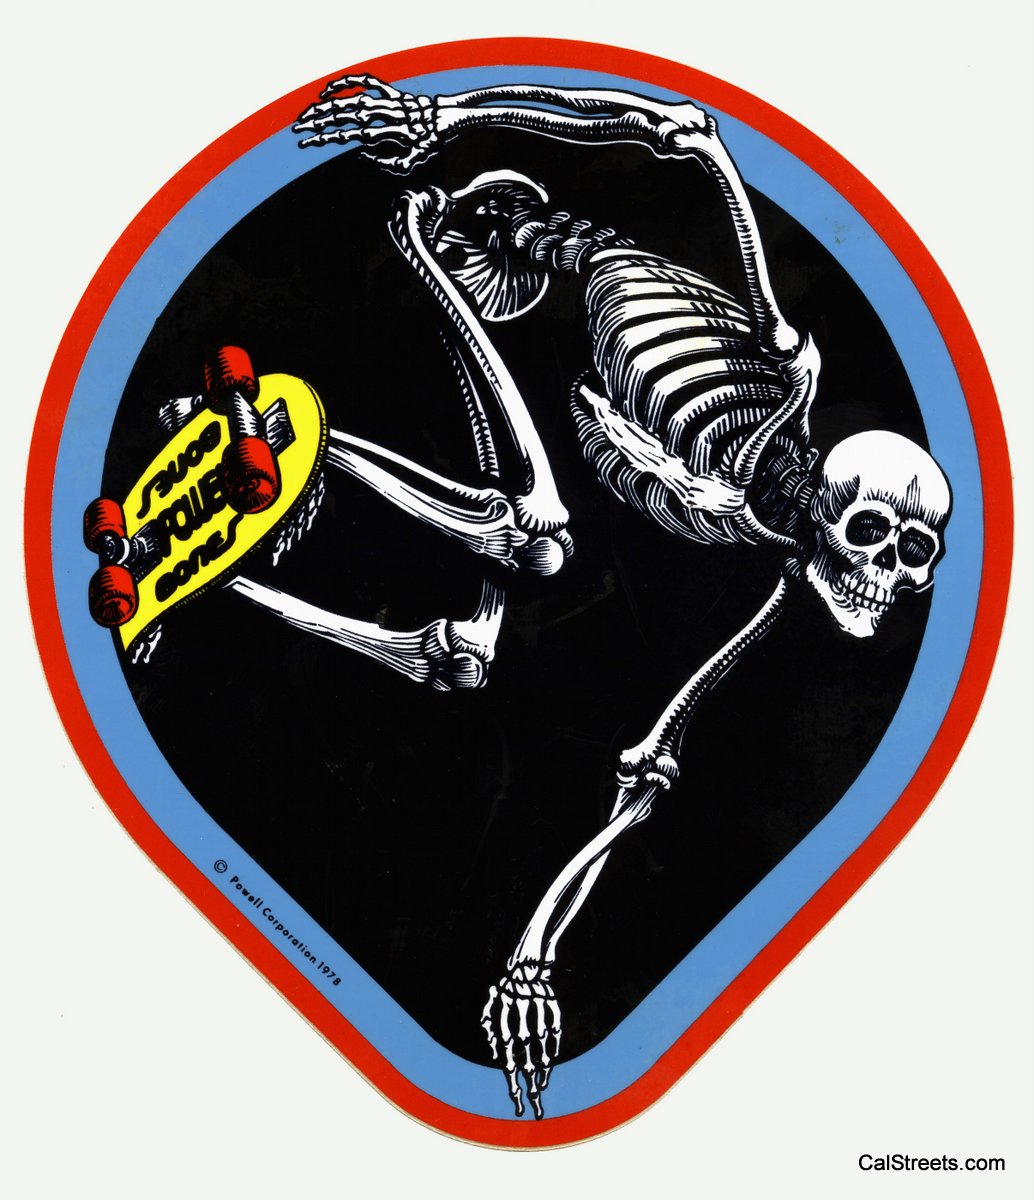 Powell-Bones-Skeleton-Pipe-Ride2.jpg